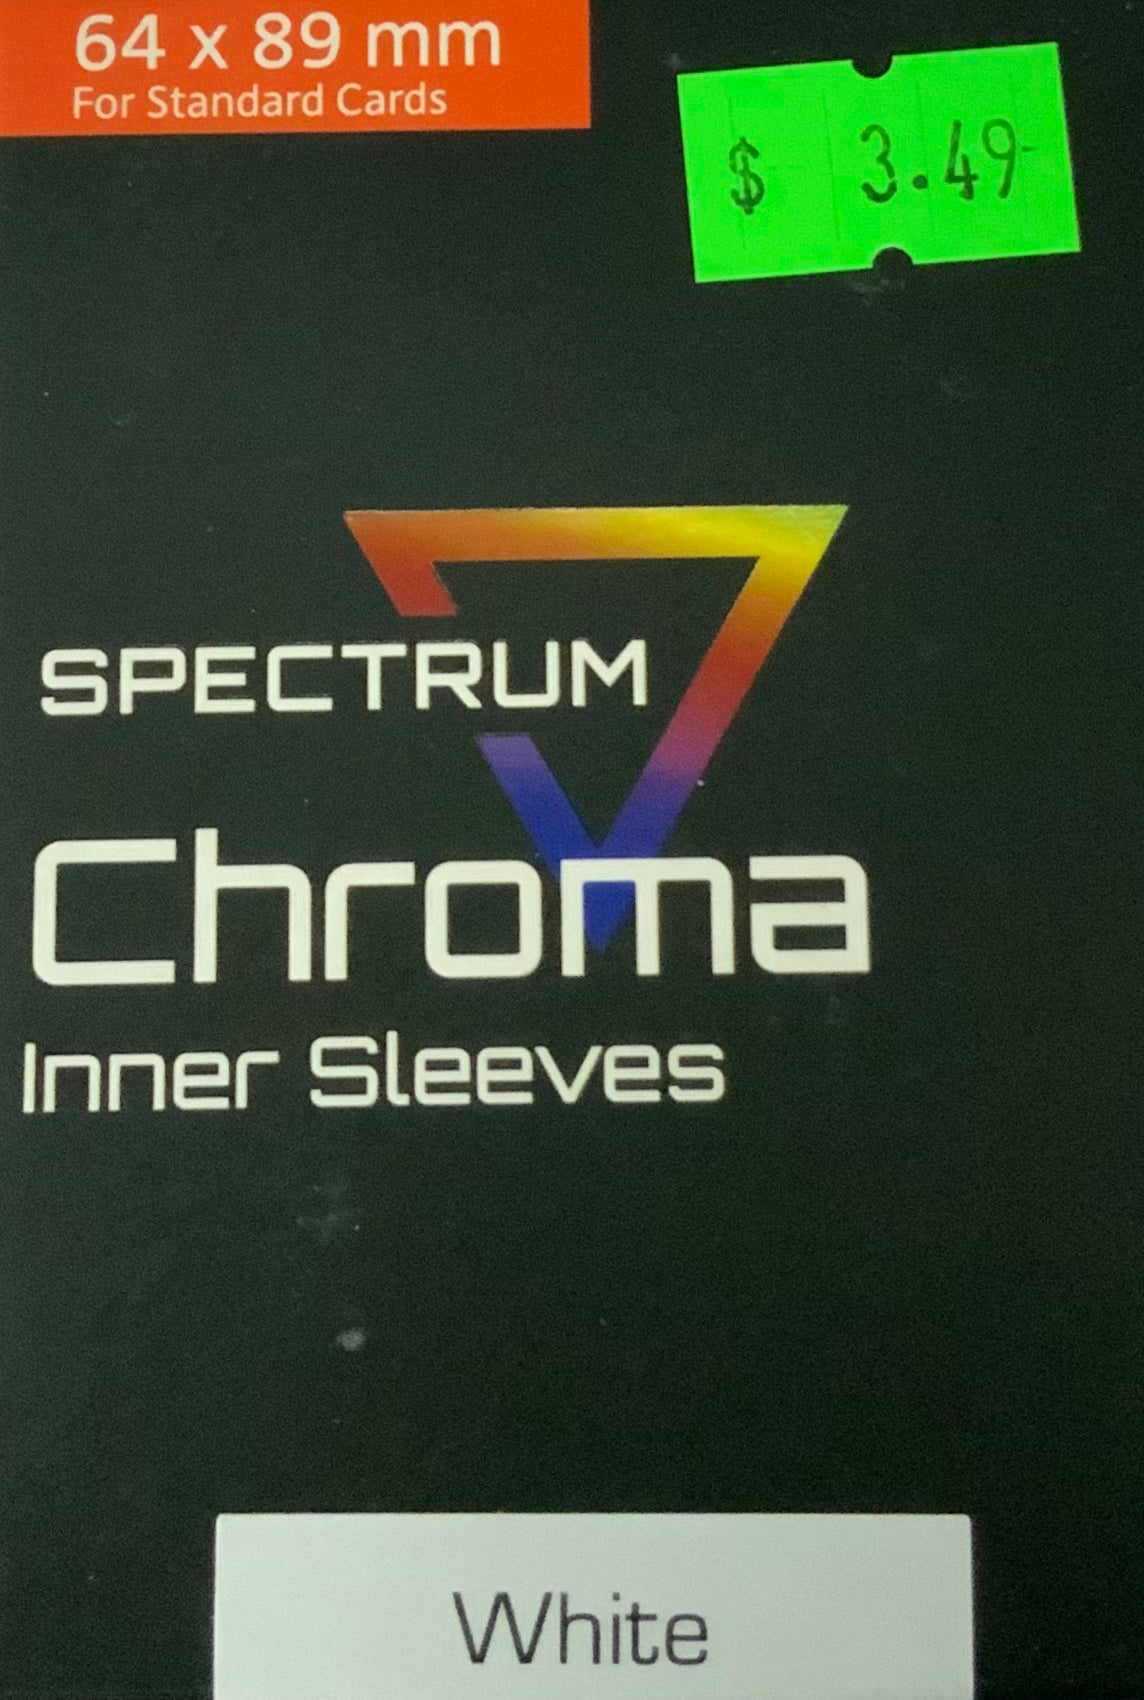 Spectrum Chroma Inner Sleeves - White